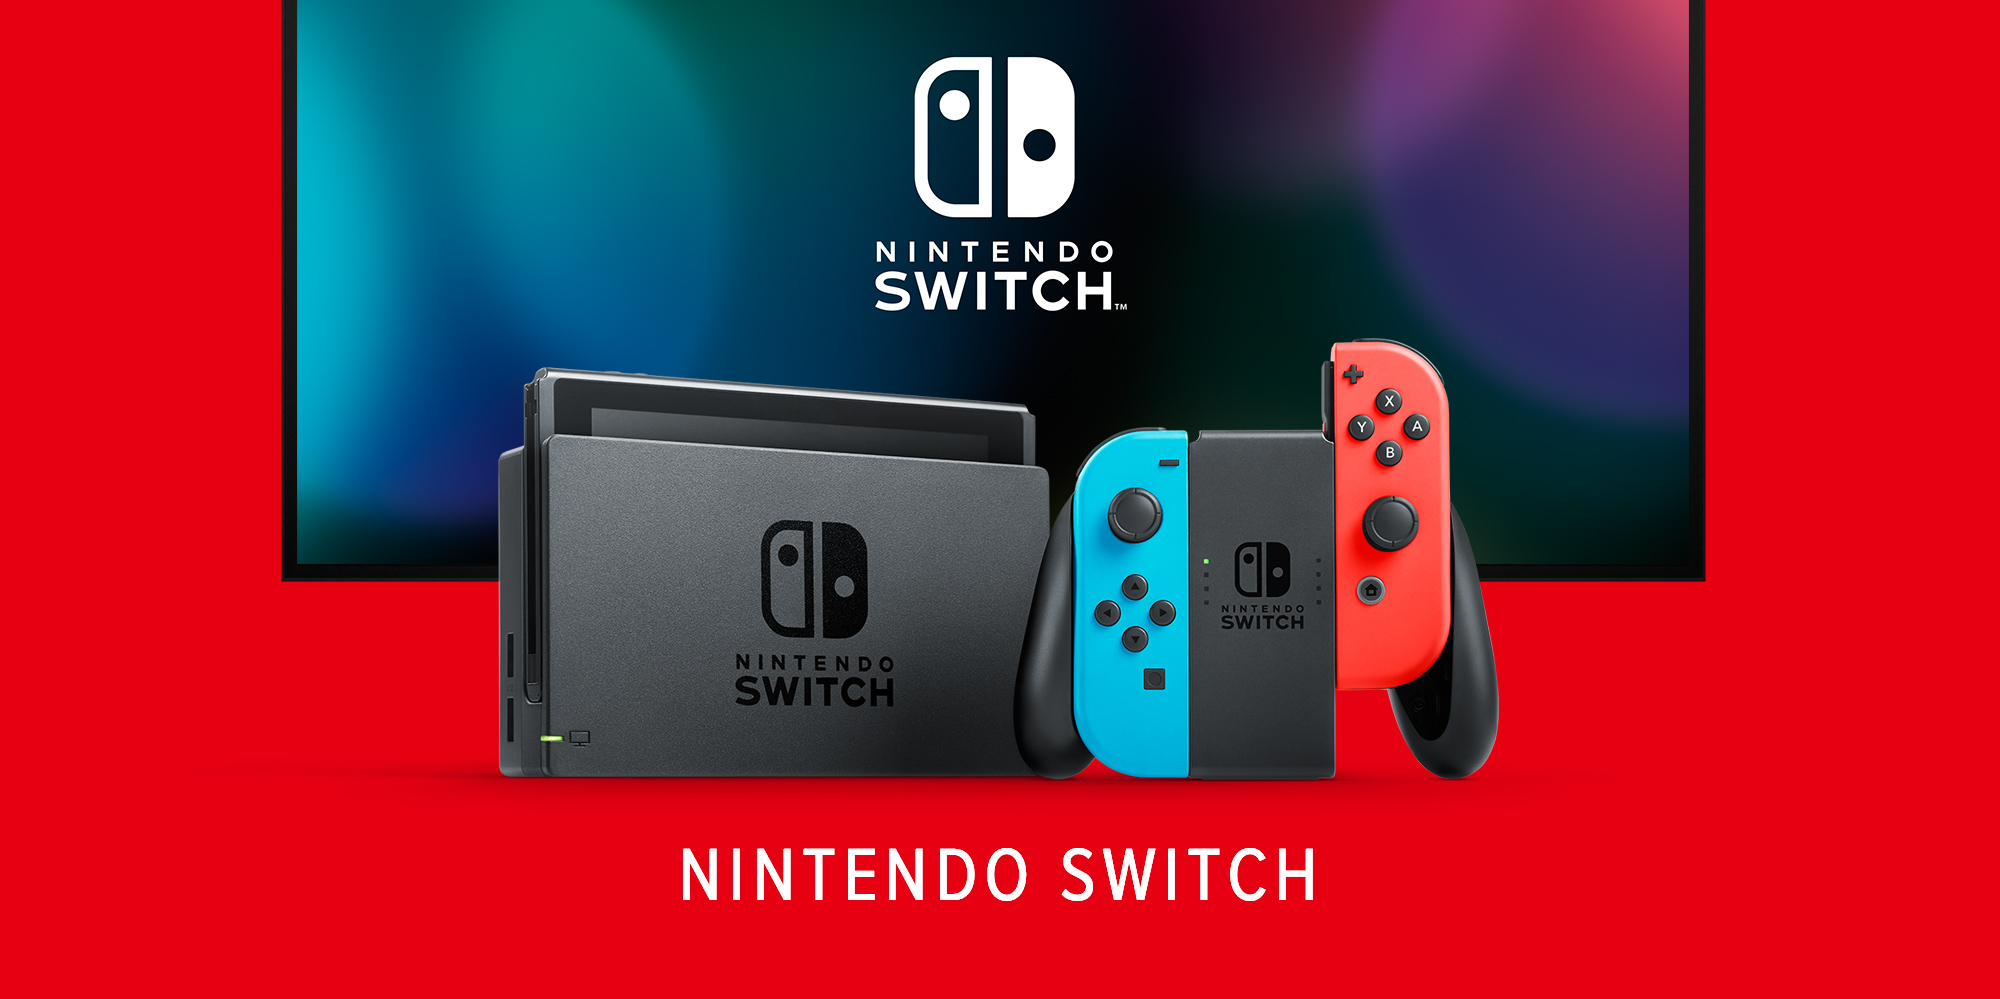 È stata trovata una soluzione al problema della deriva dei JoyCon in Nintendo Switch